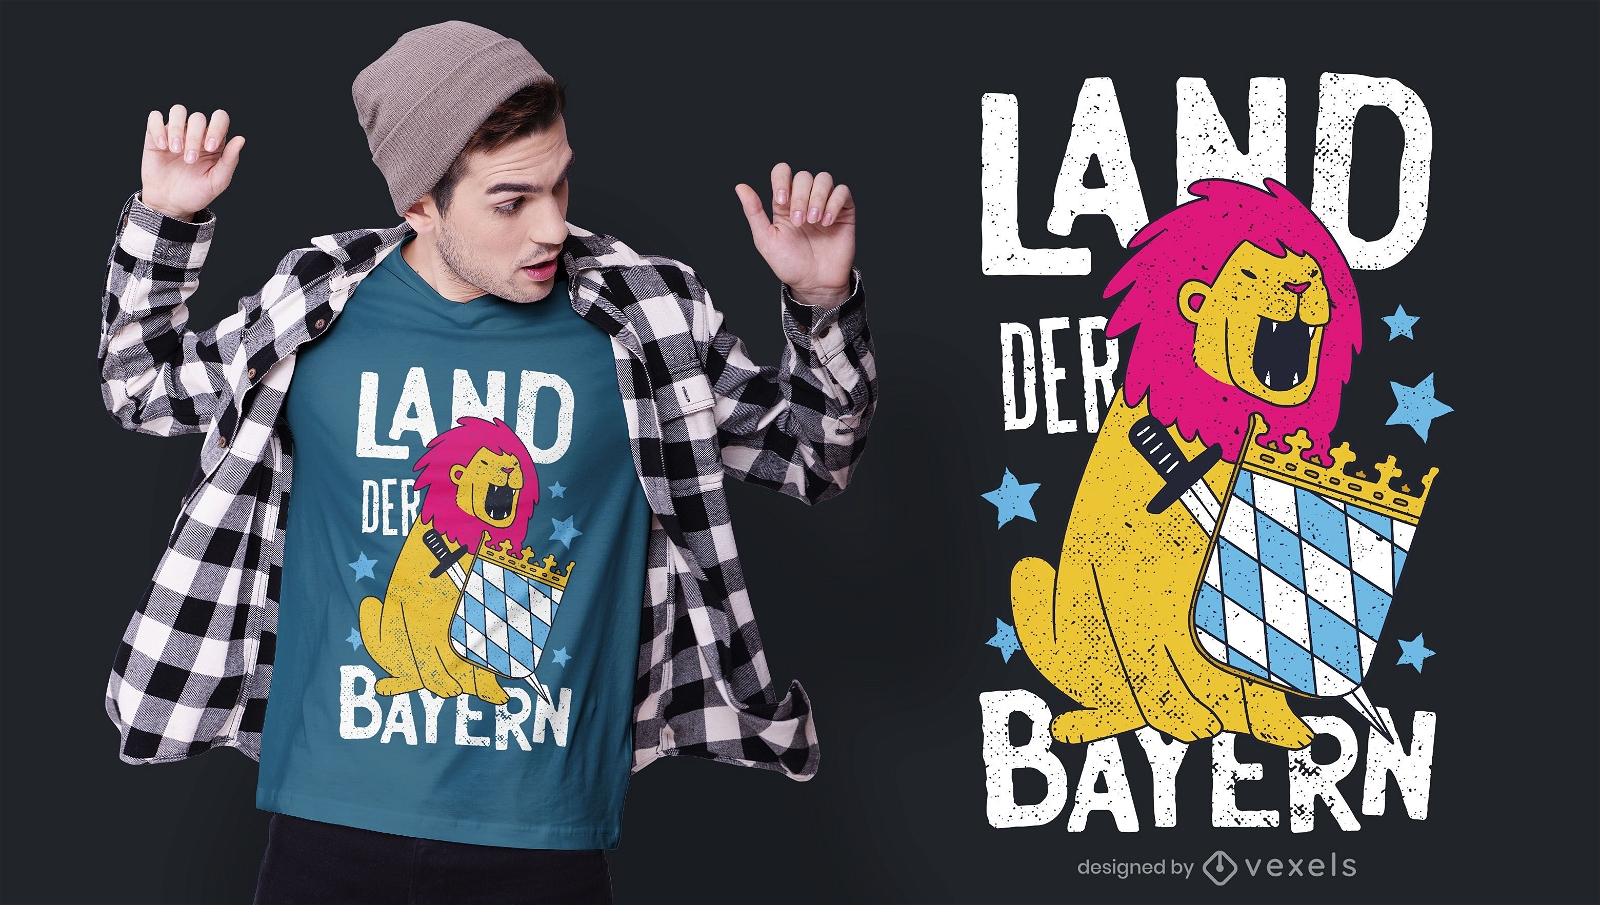 Bayern german t-shirt design